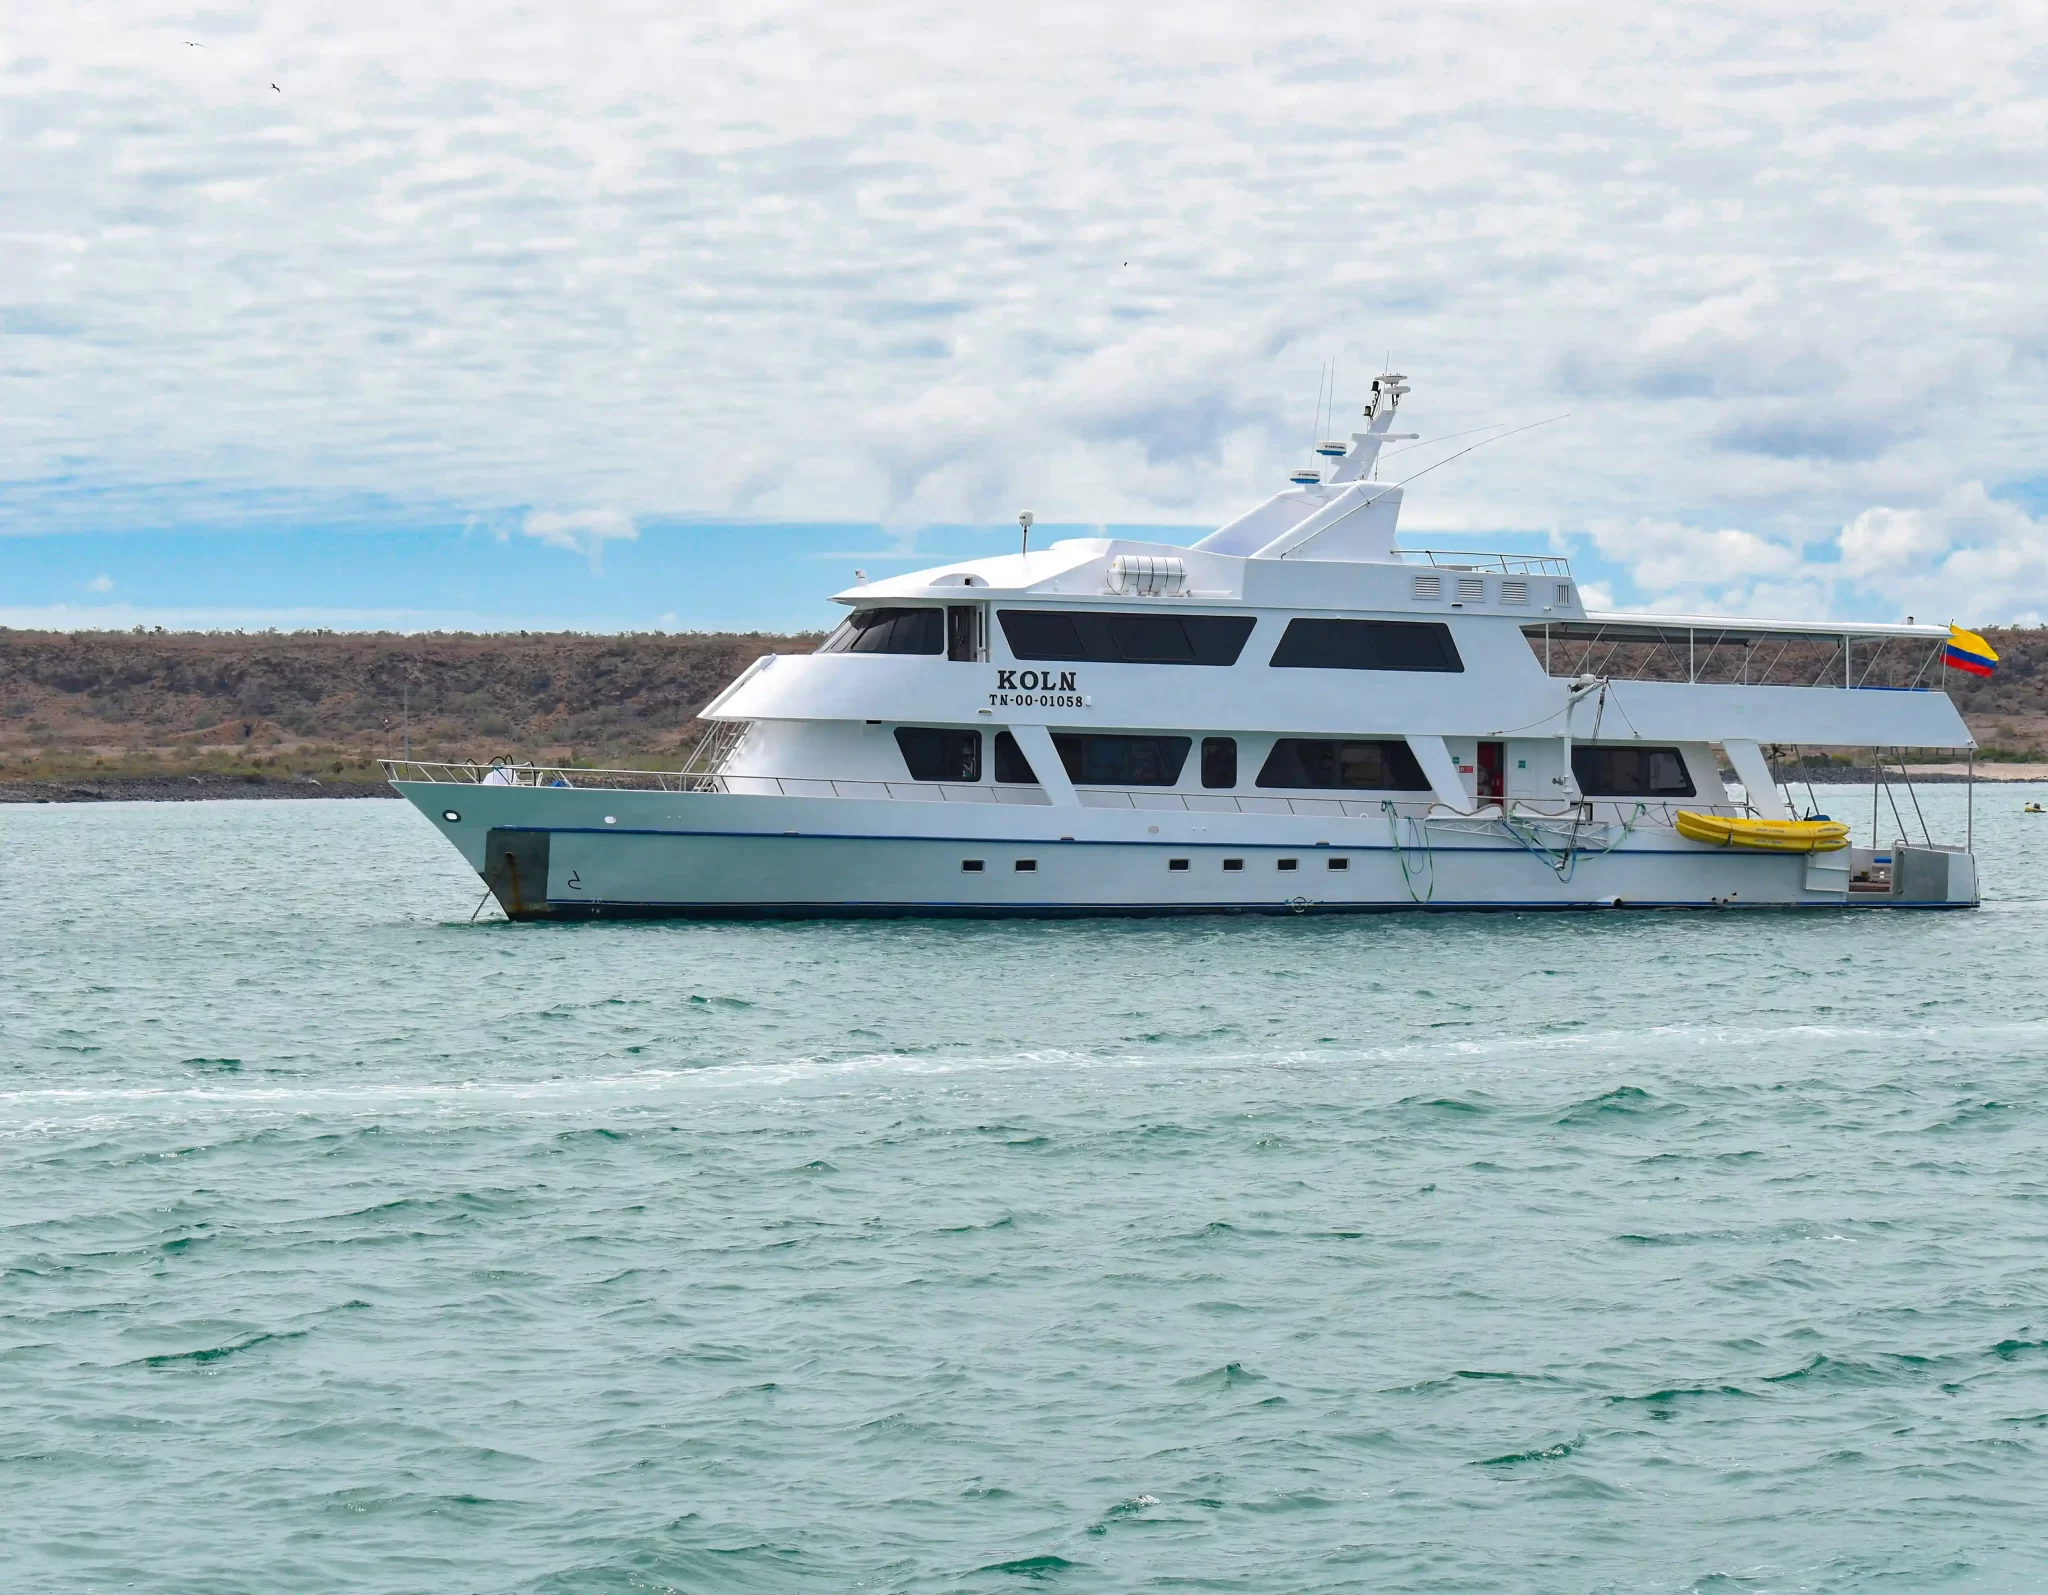 crucero köln galápagos yate barco tour